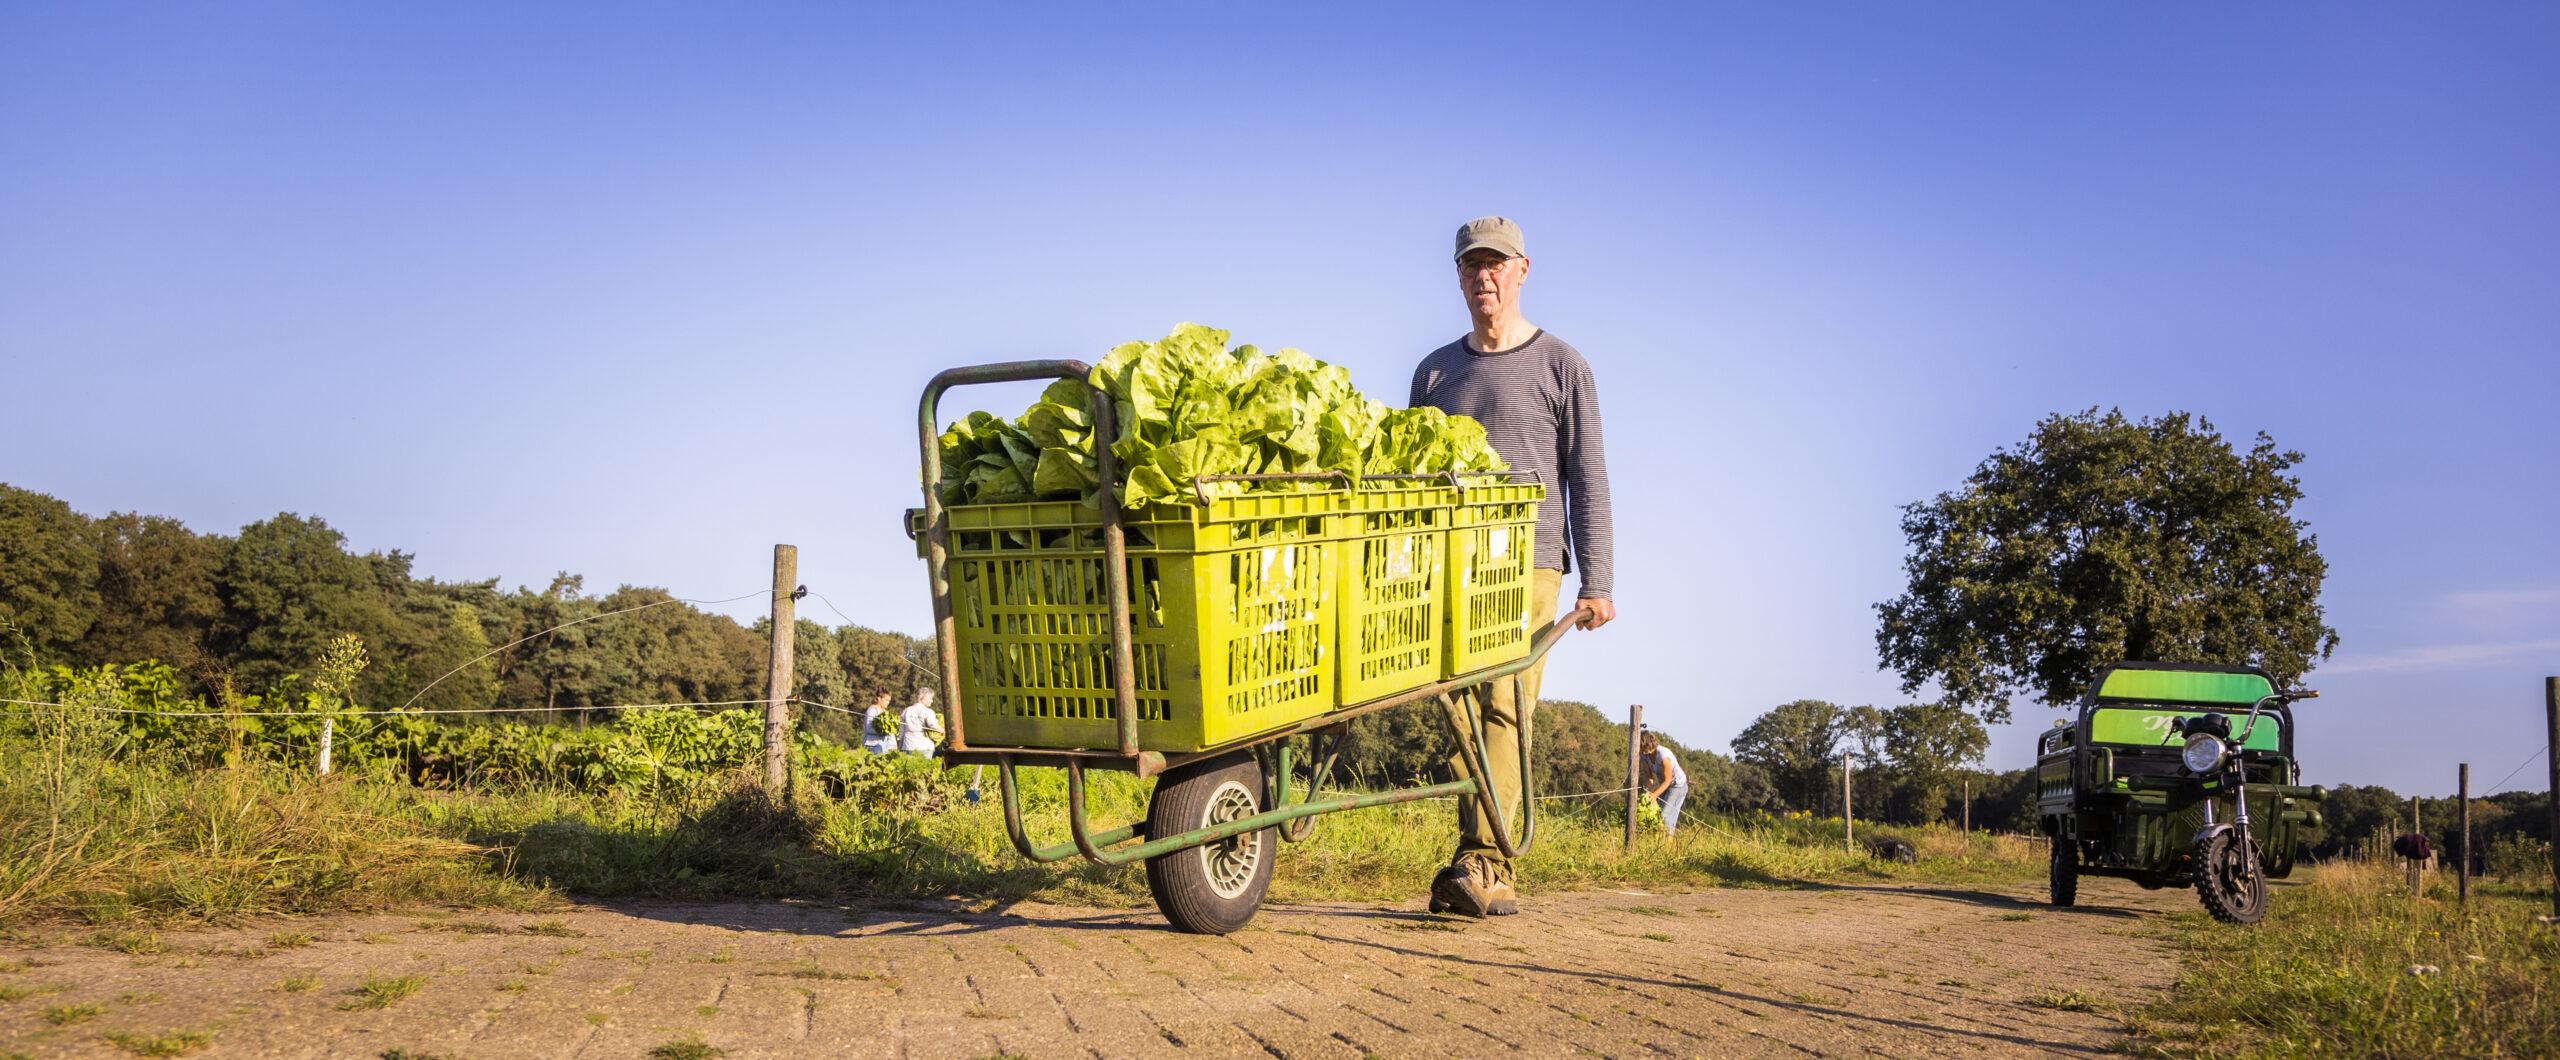 Een wat oudere man met een pet op duwt een steekwagen met drie kratten verse sla voort. Op de achtergrond zijn akkers met groenten te zien.